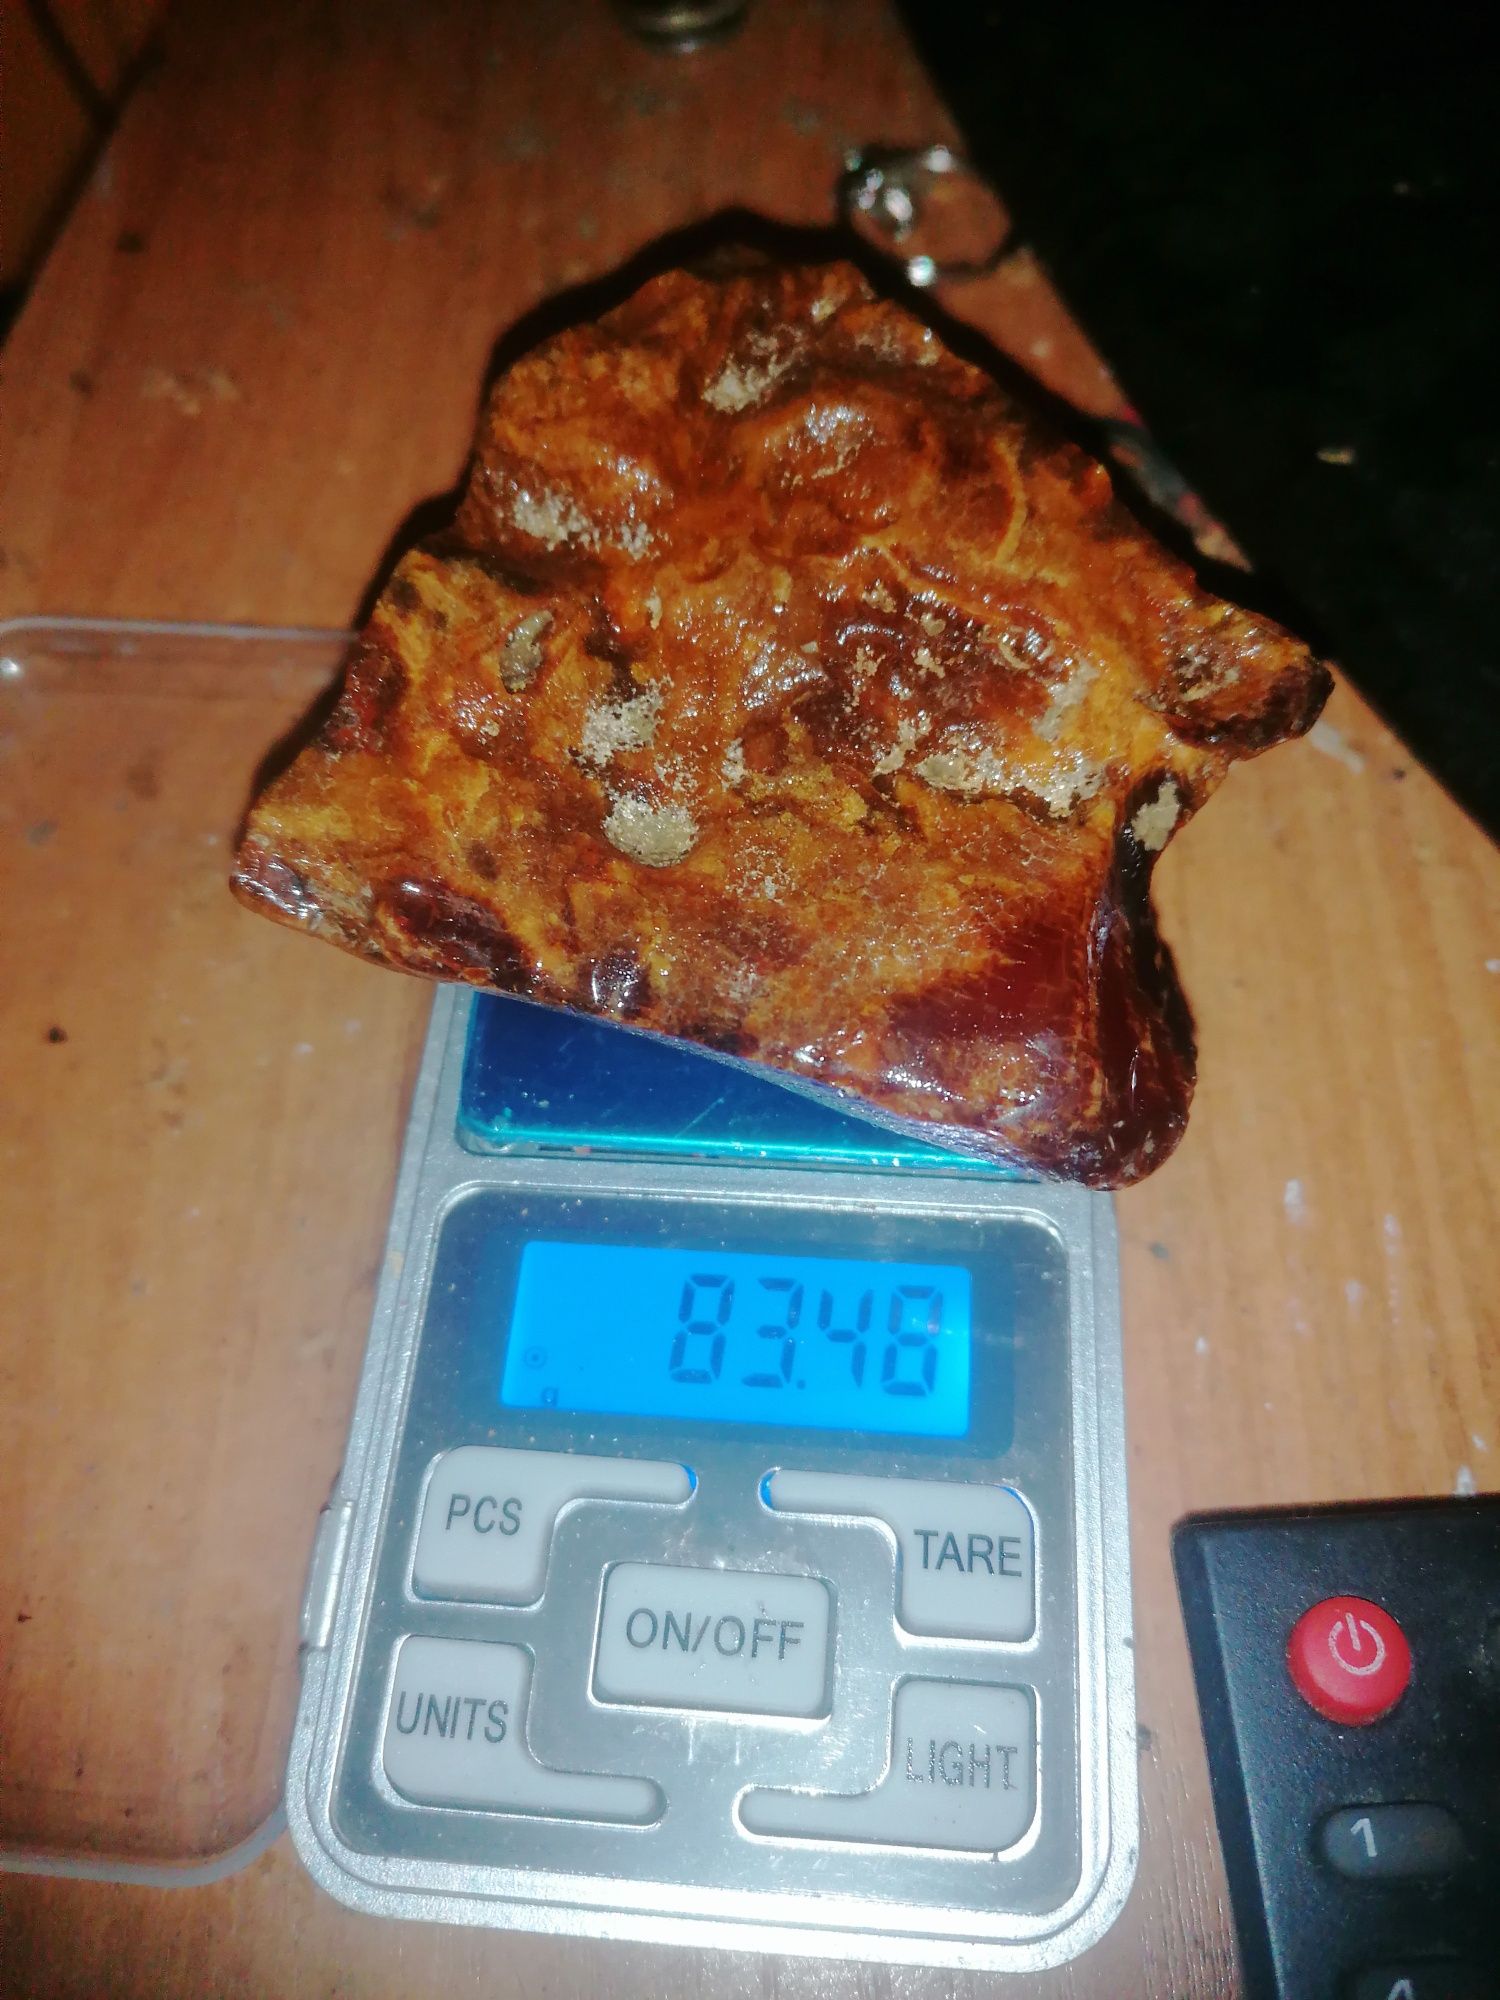 Bursztyn baltycki 80 gram